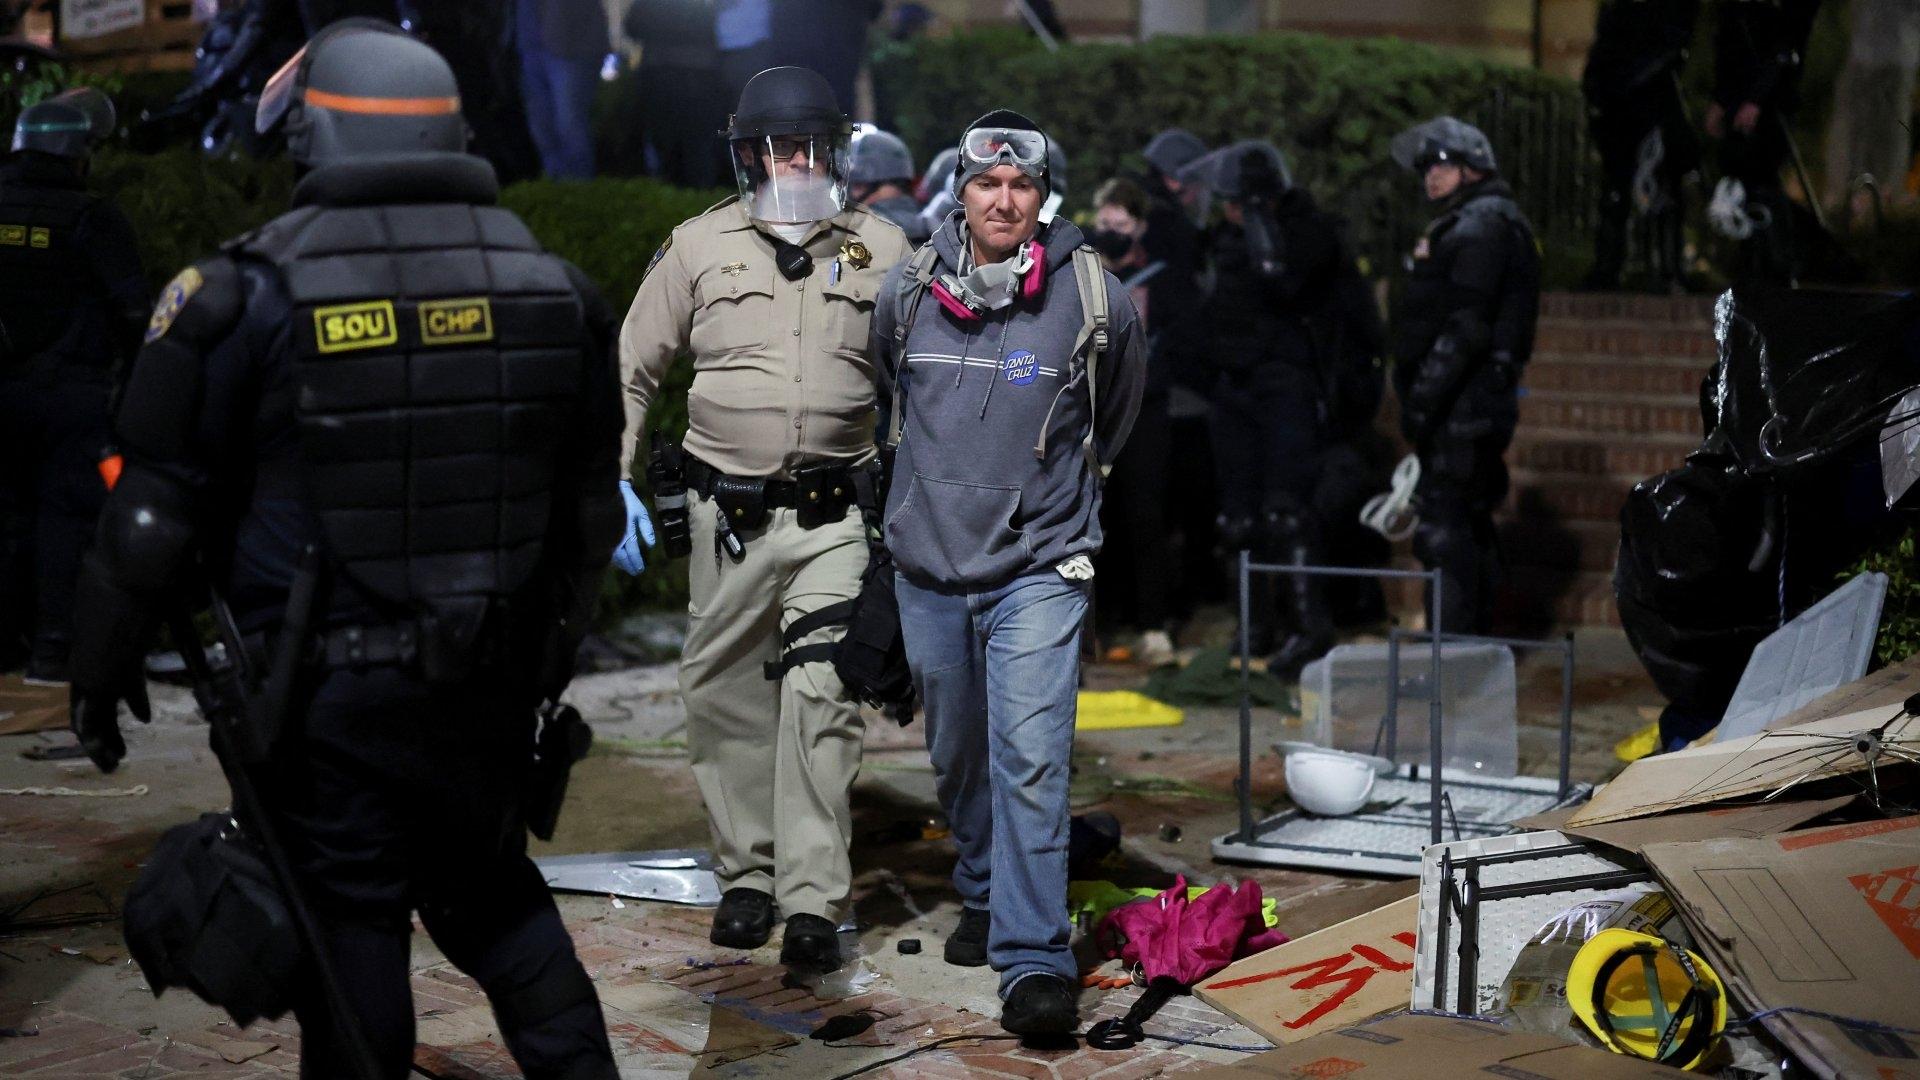 Galería | Policías Detienen a Manifestantes en UCLA tras Irrumpir en Campamento Propalestino